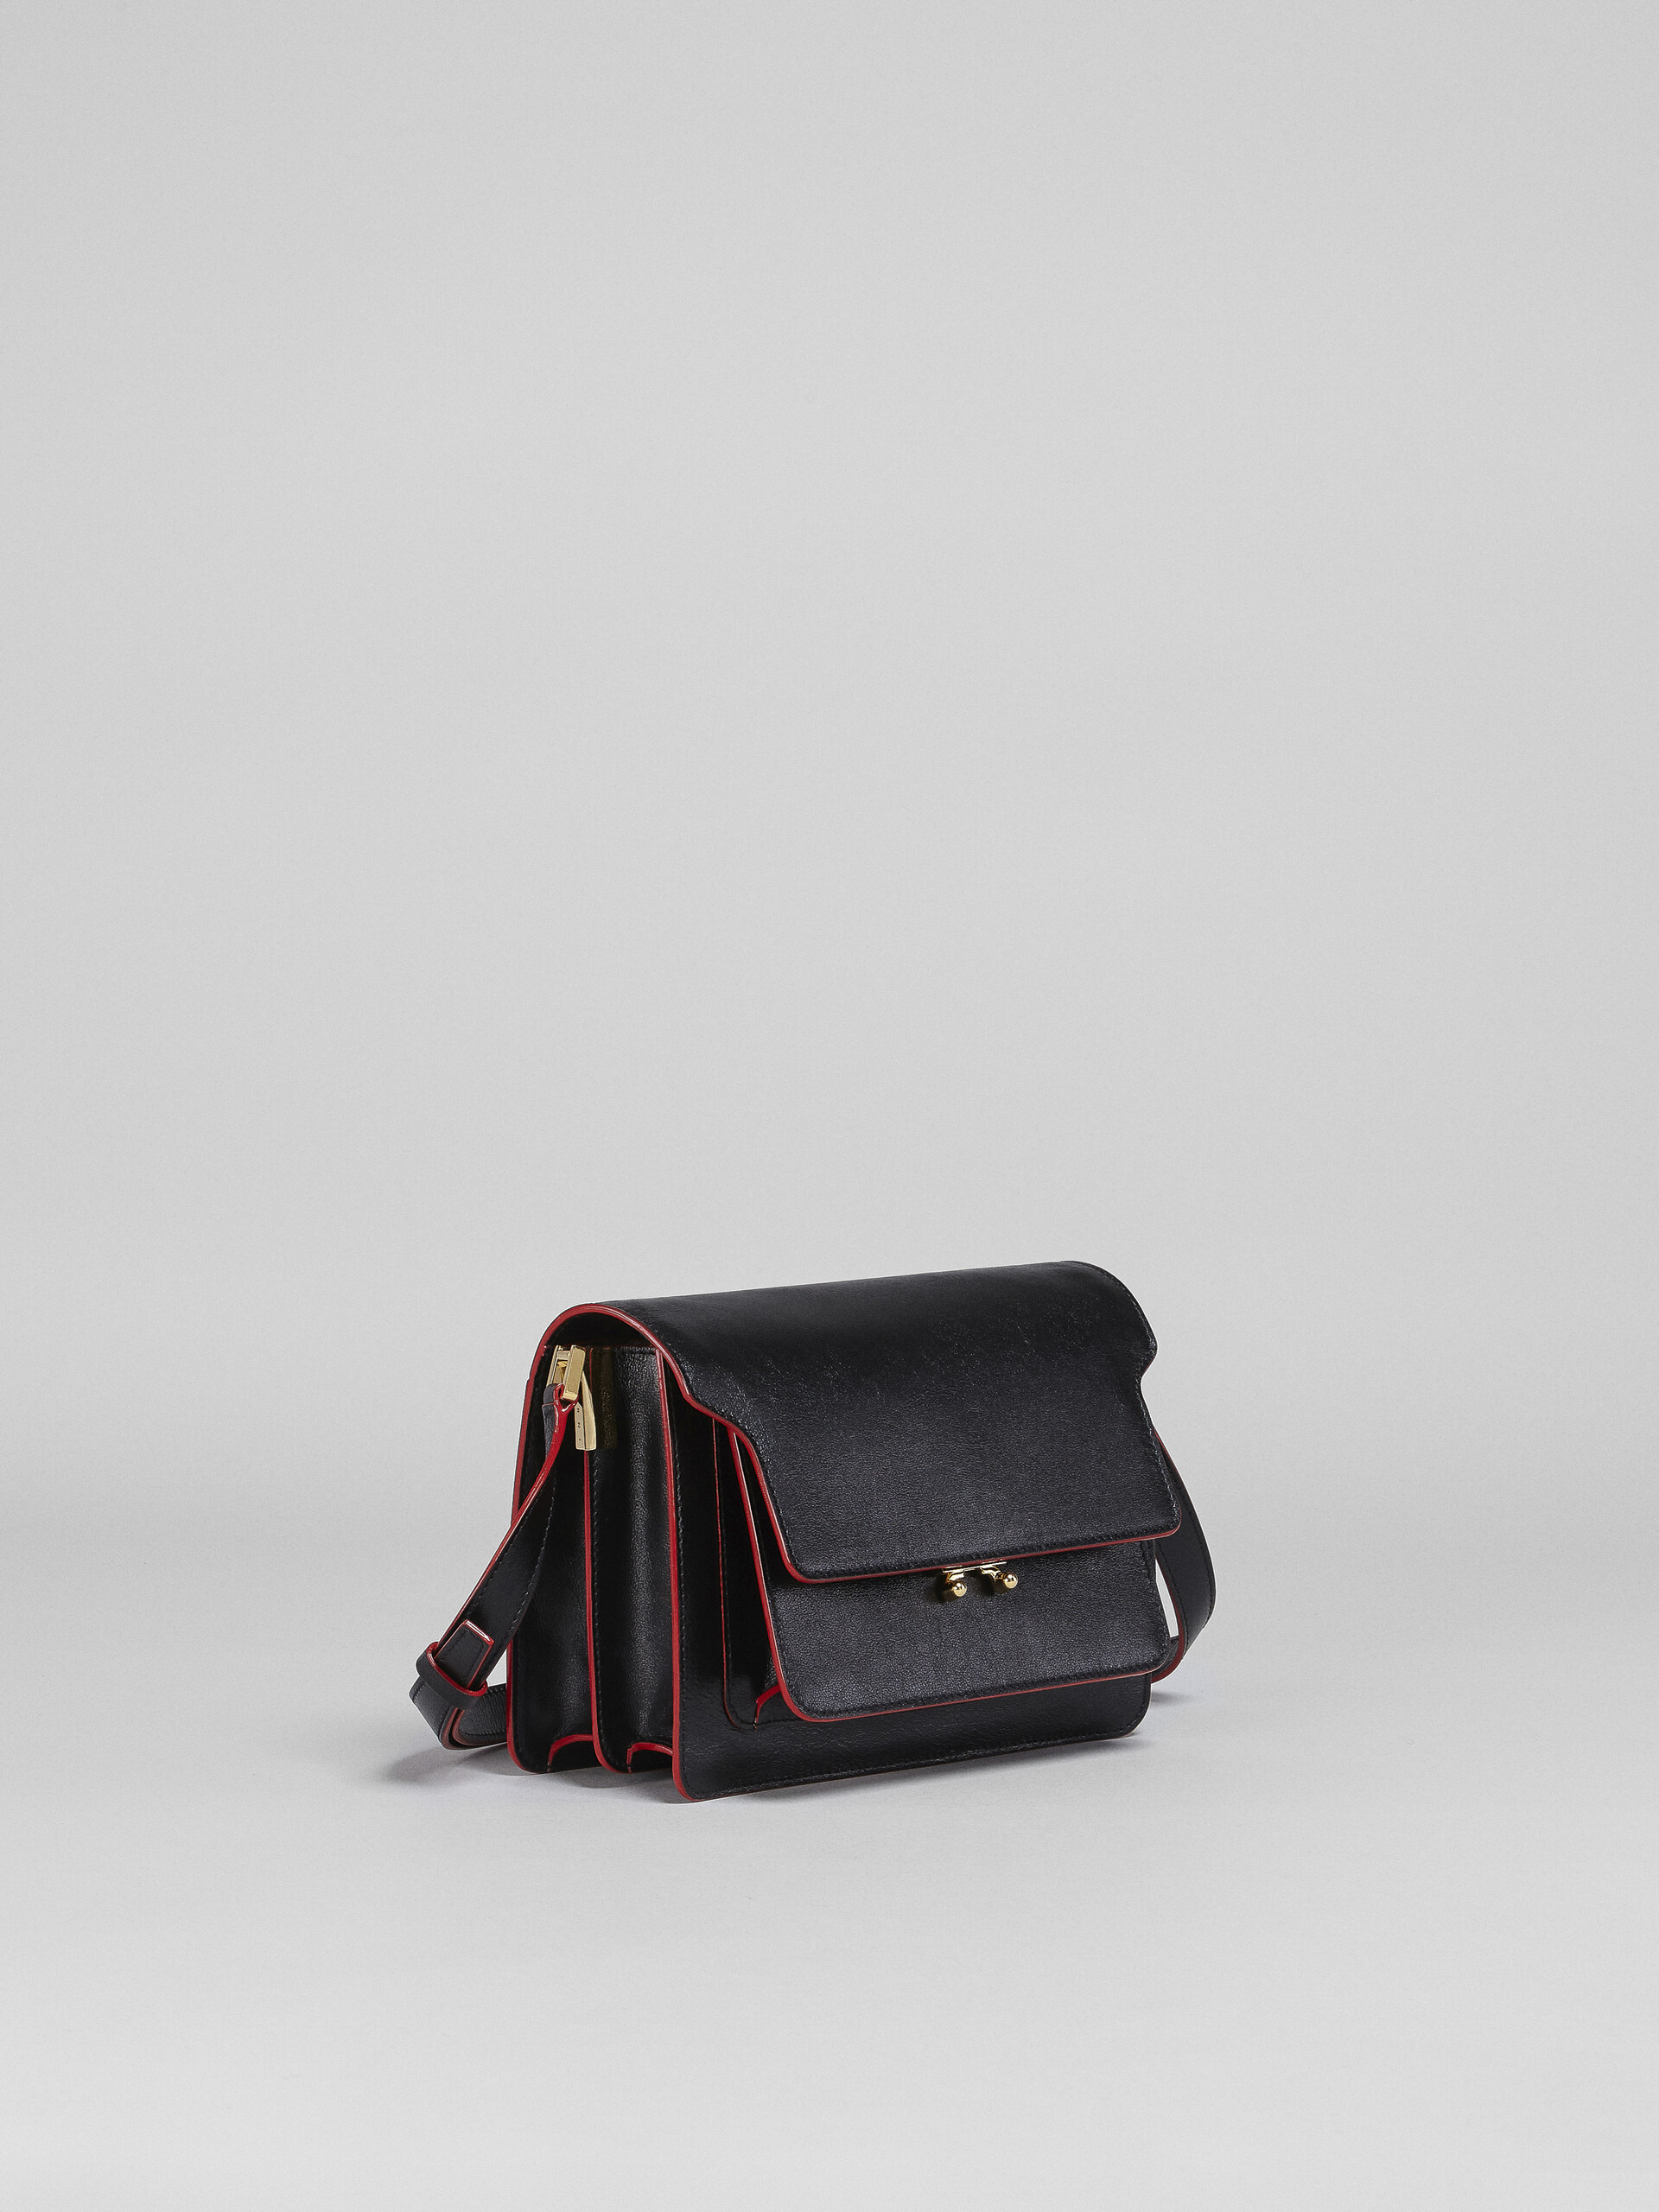 Tumbled calf leather TRUNK SOFT bag - Shoulder Bag - Image 6